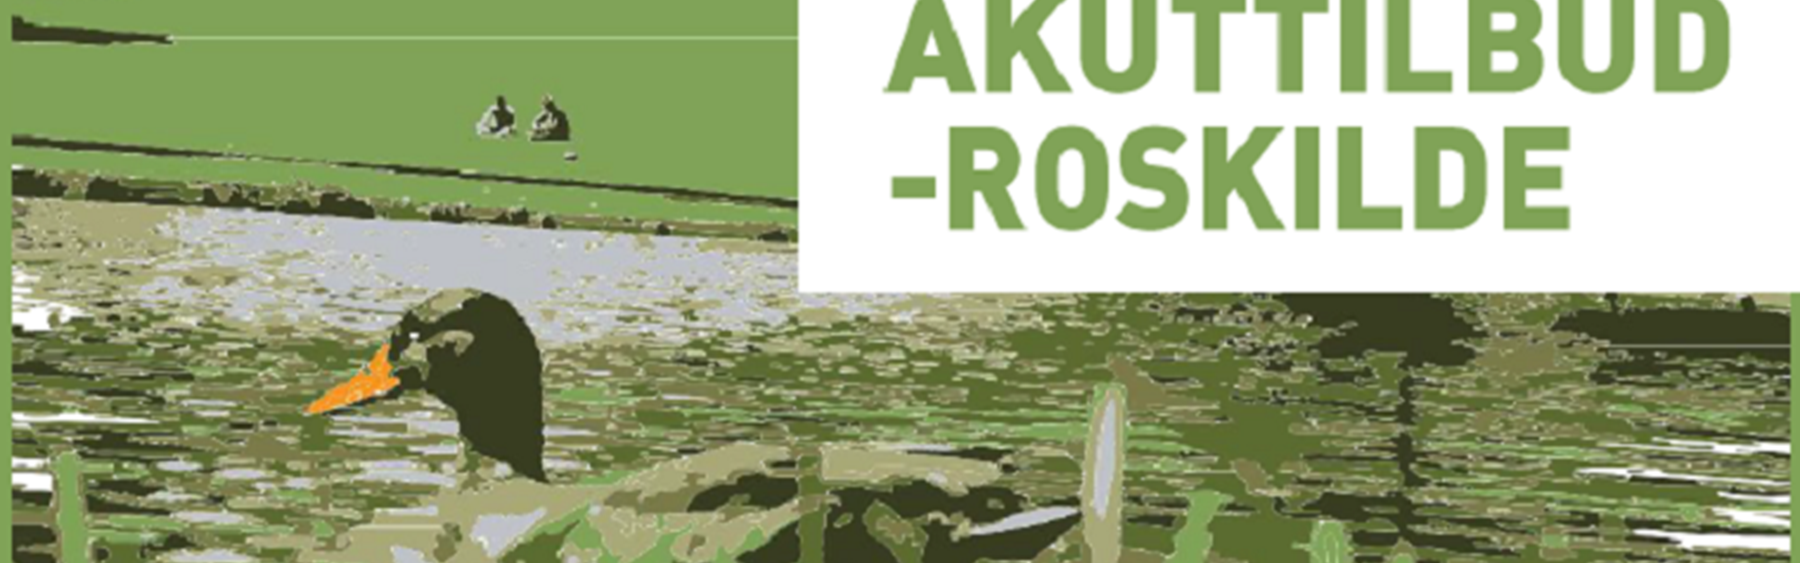 Flyer for Akuttilbud Roskilde med grønne farver og and.